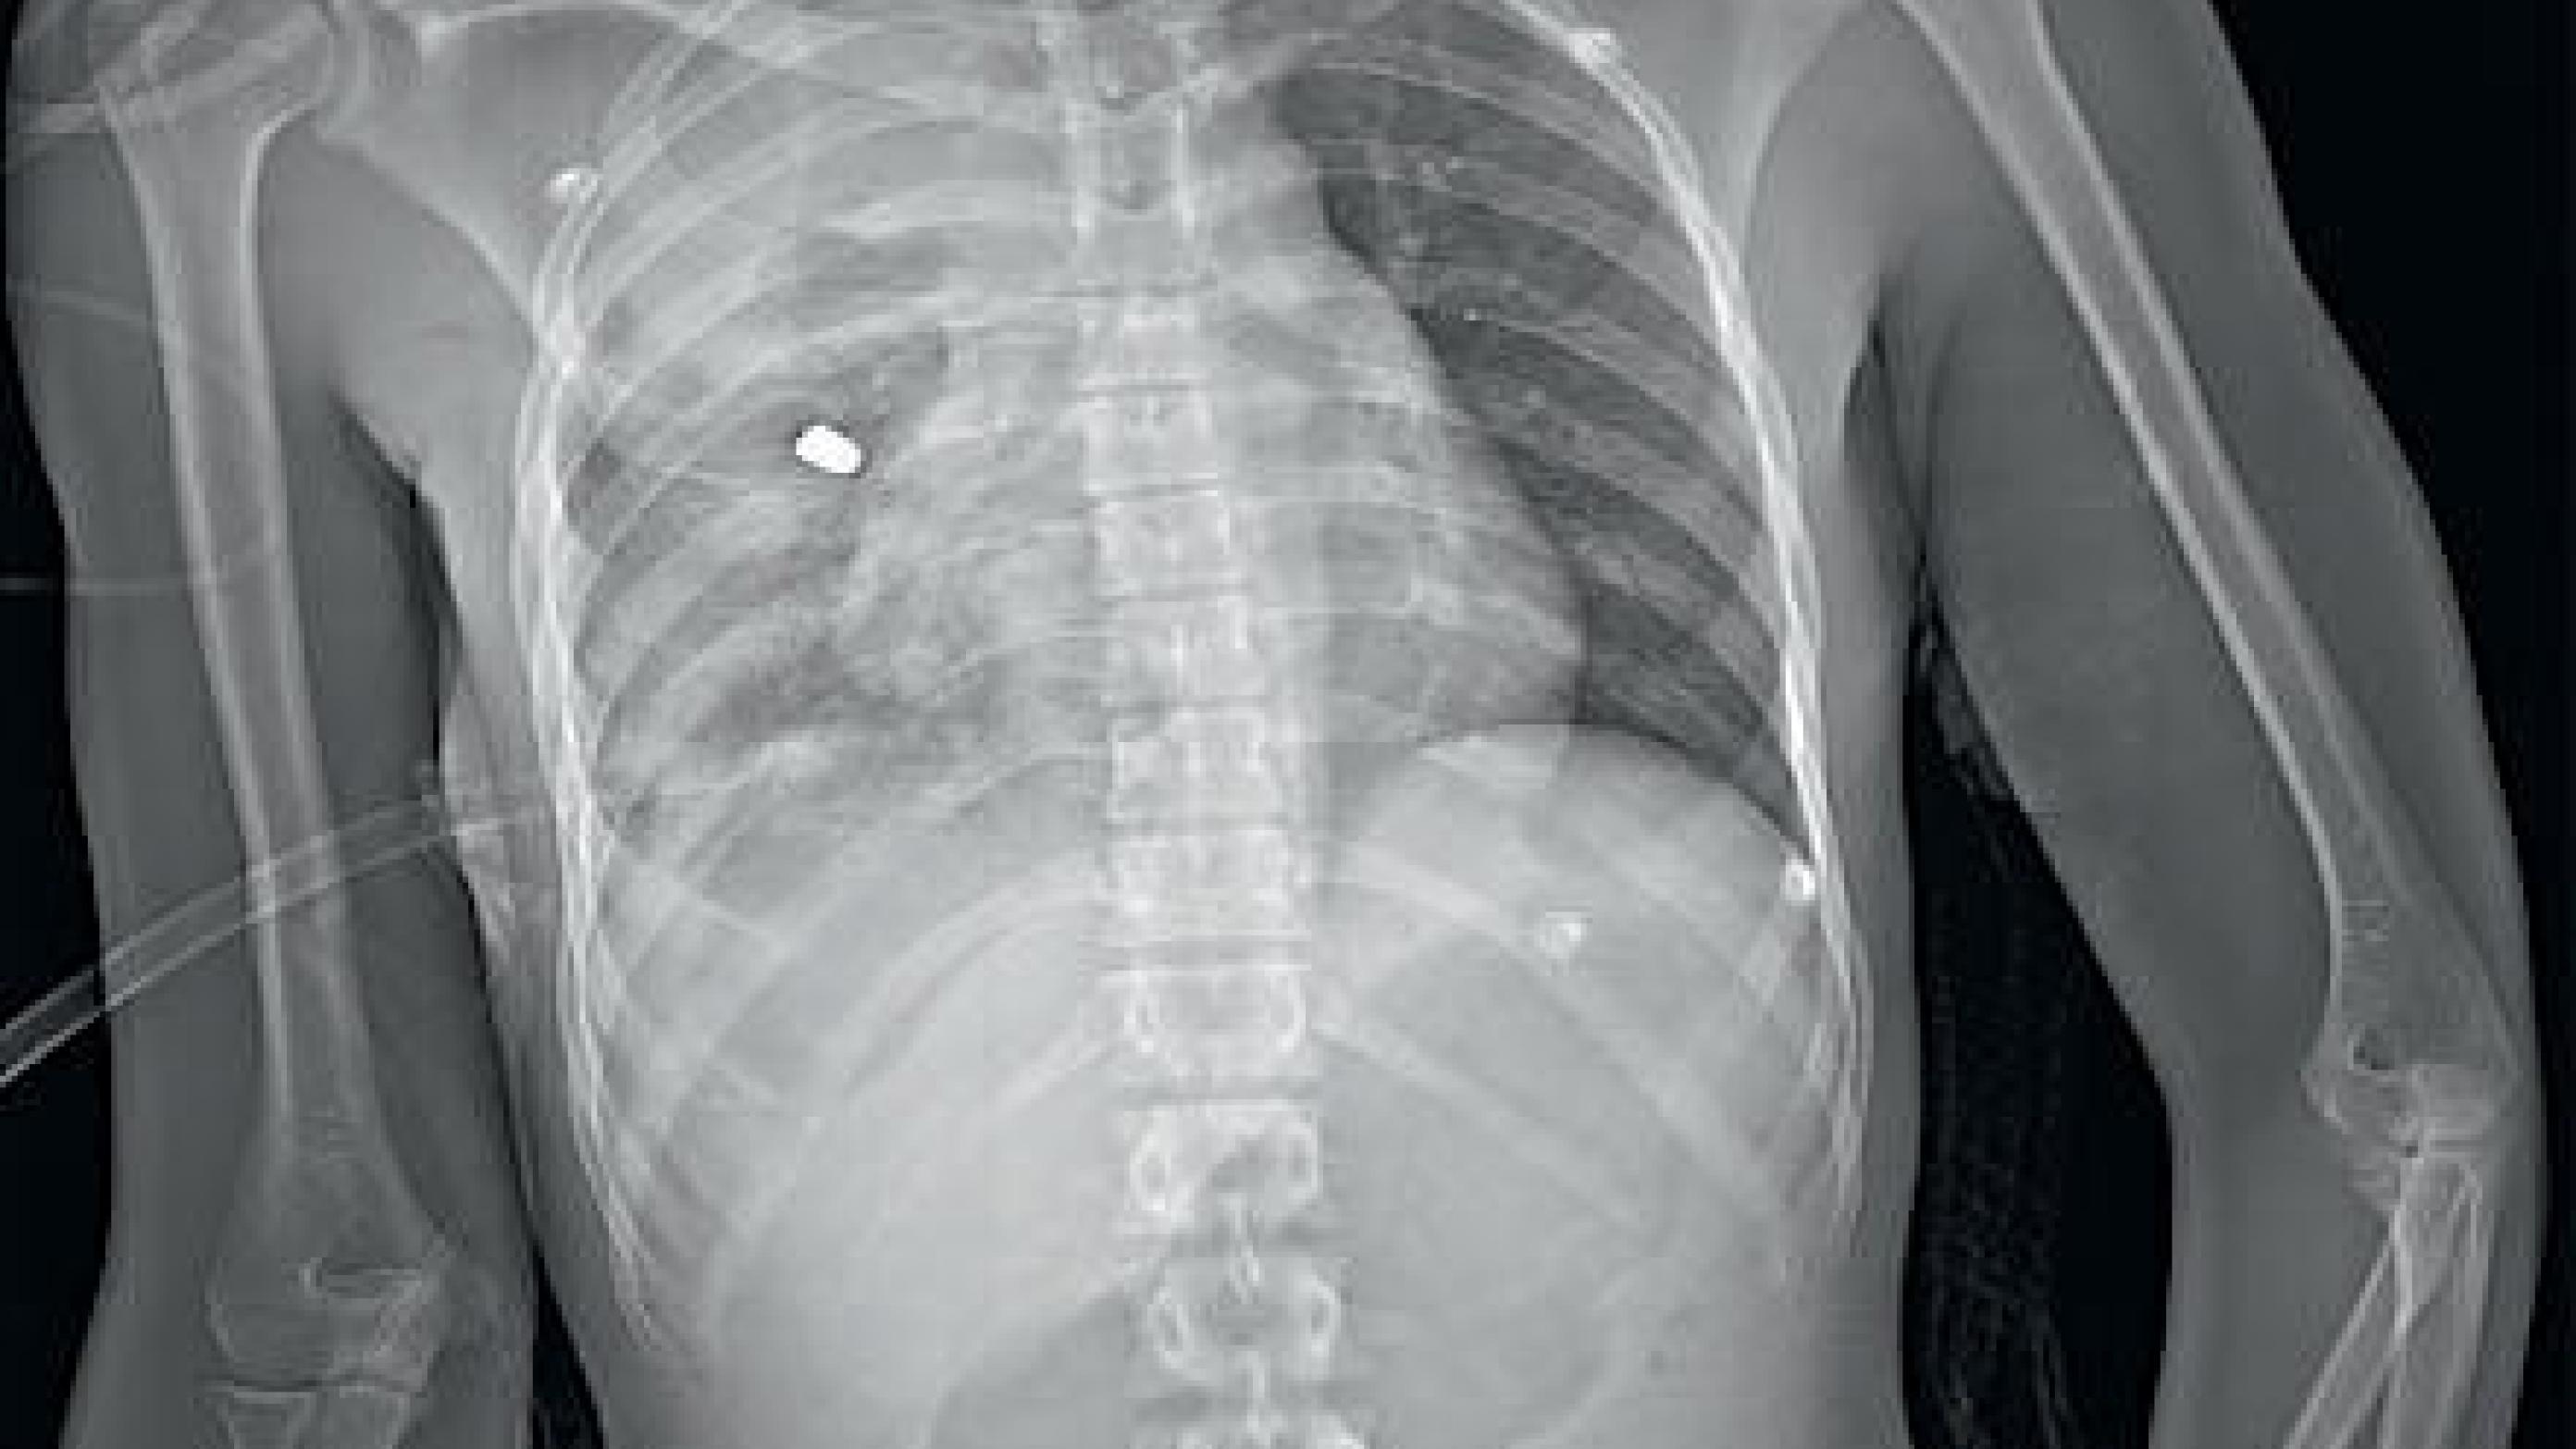 Røntgenbillede af en traumepatient med projektiler siddende i højre thorax og lår.